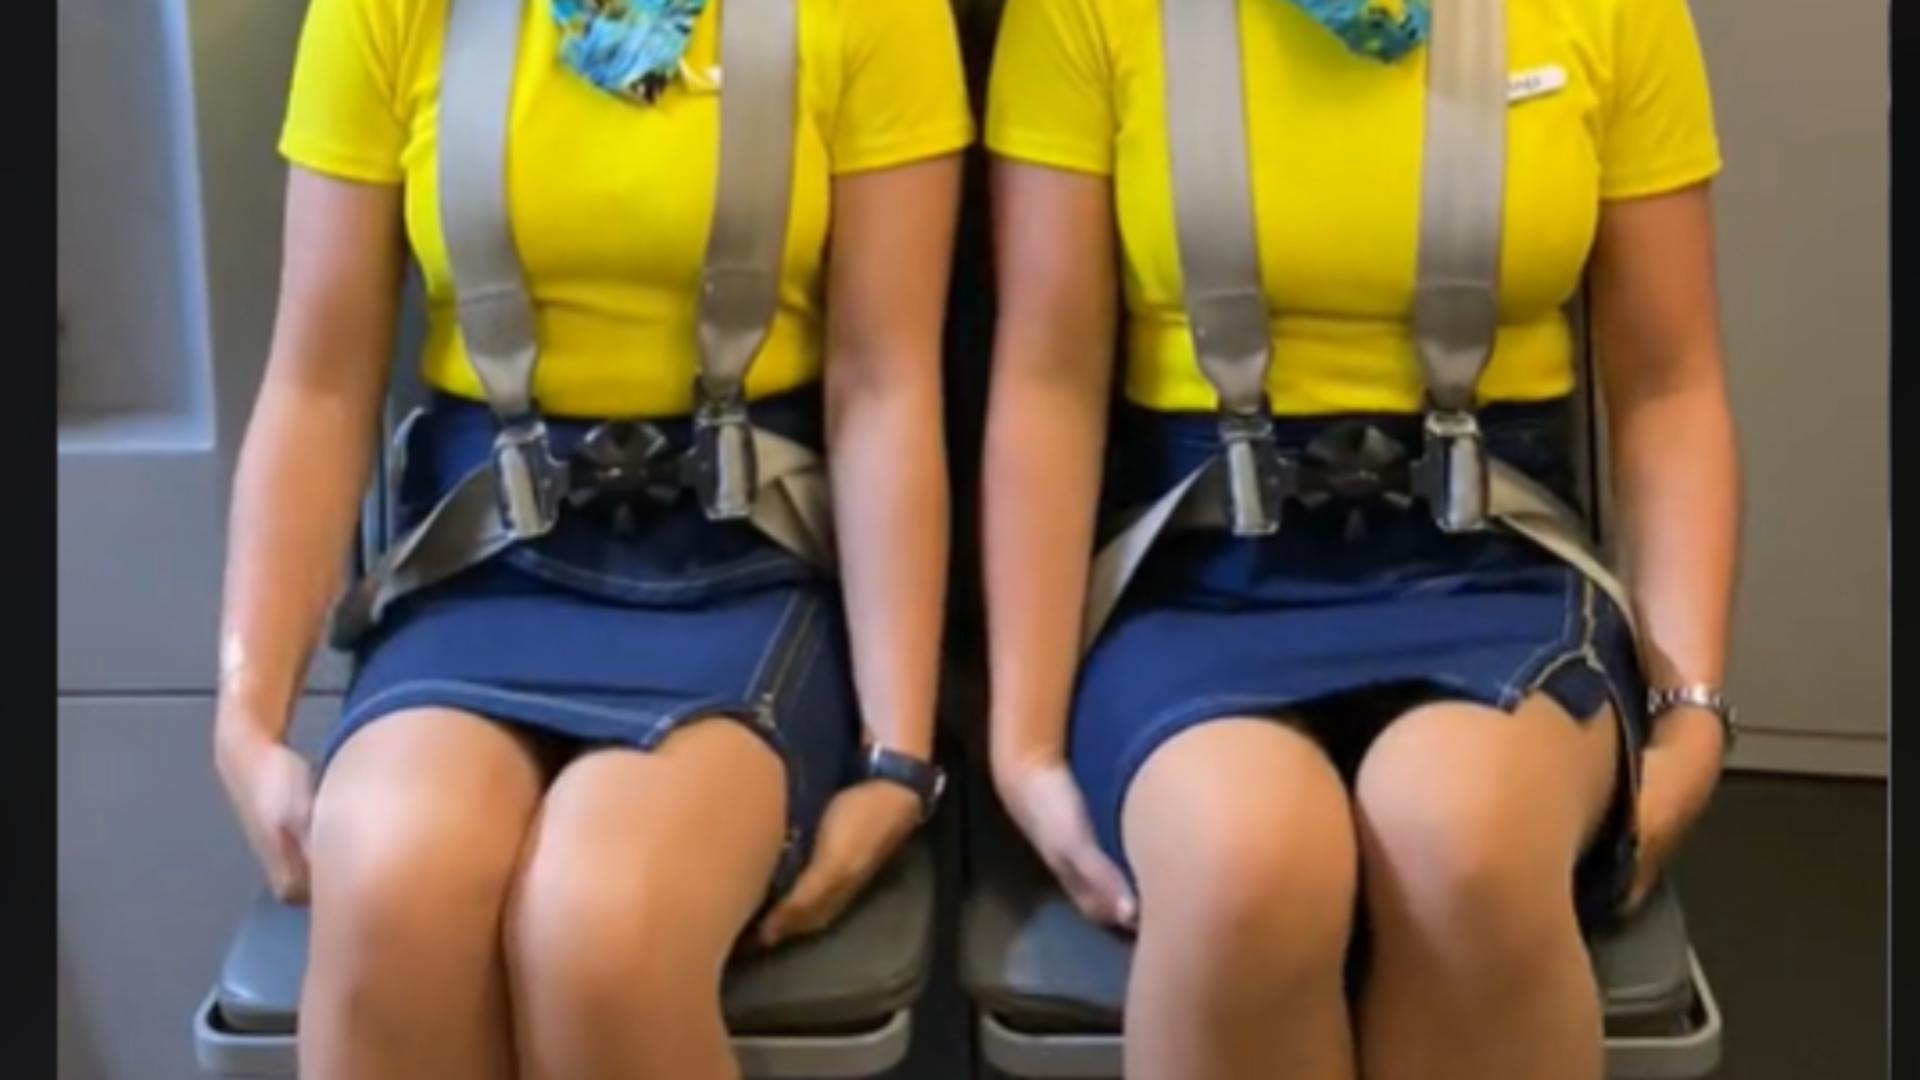 Trucurile incredibile ale stewardeselor. De ce stau cu mâinile sub fund în timpul decolării și aterizării? – VIDEO